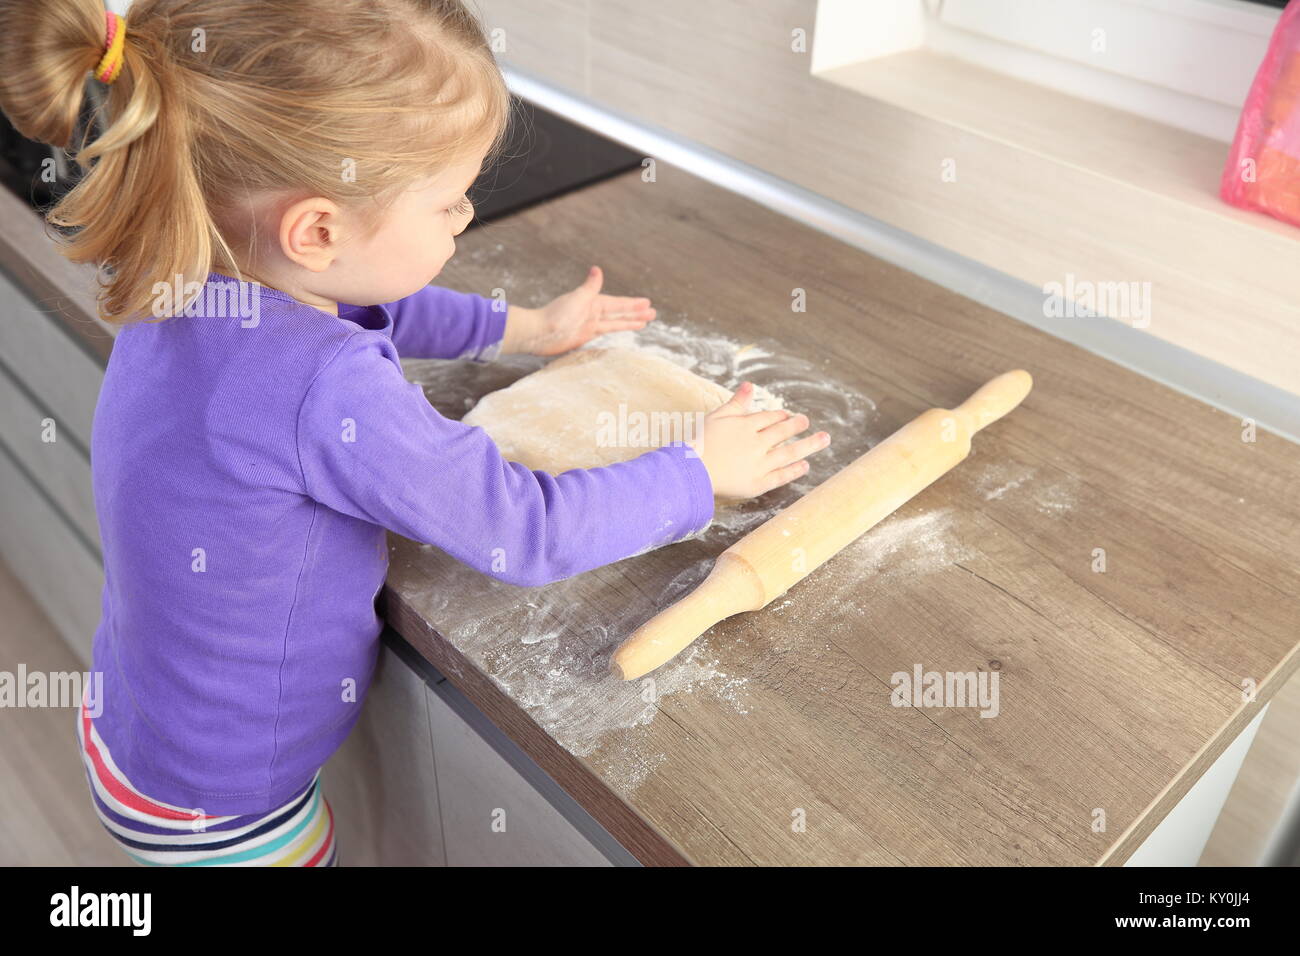 Petite fille essayant cuisiner un bake. Enfant avec la pâte sur la cuisine. Banque D'Images